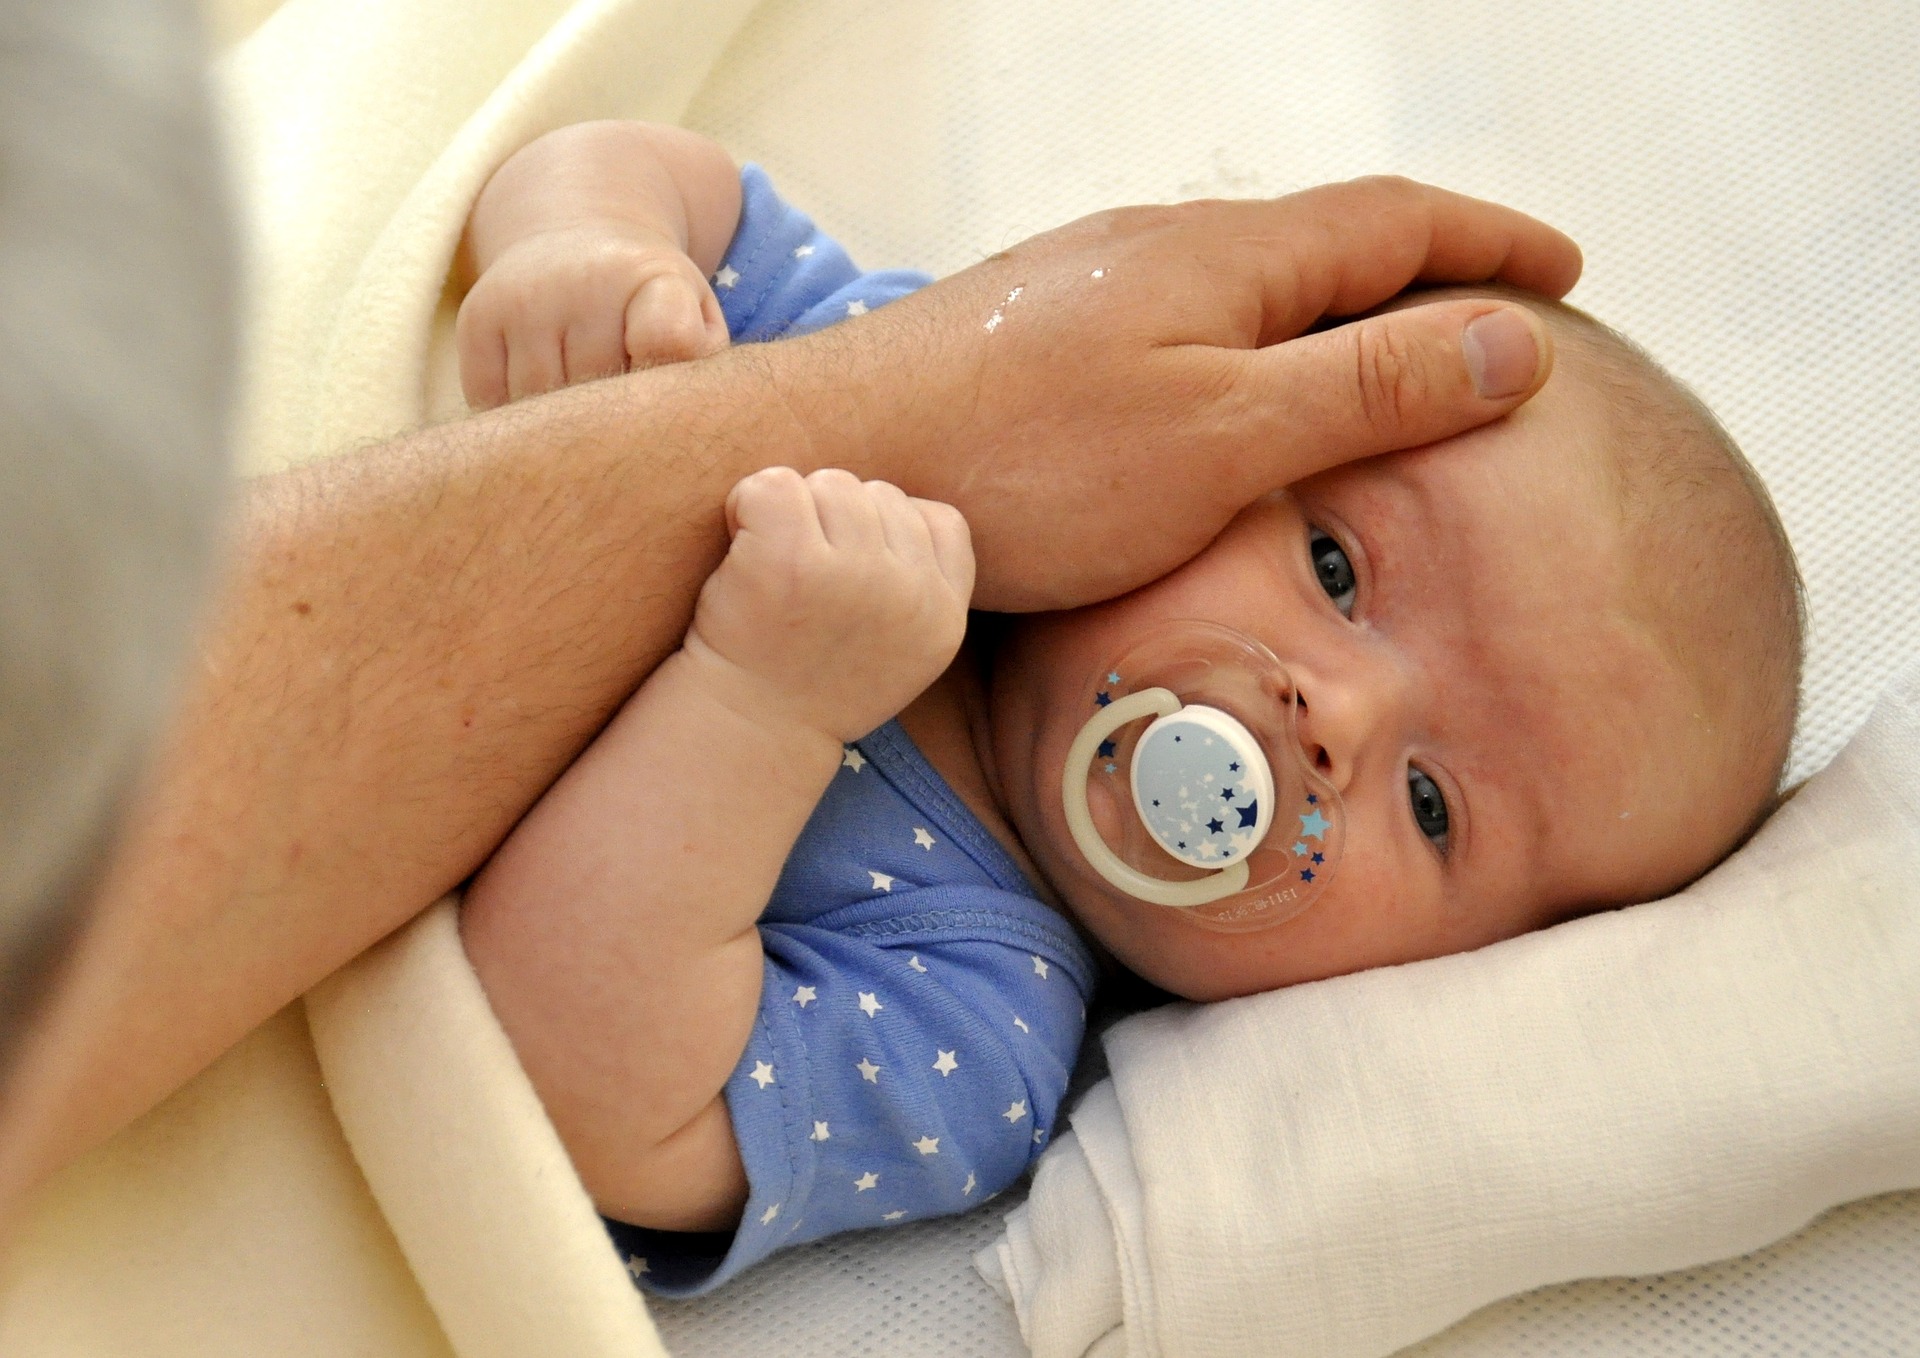 Que perçoit tactilement le nouveau-né? :: BabyLab